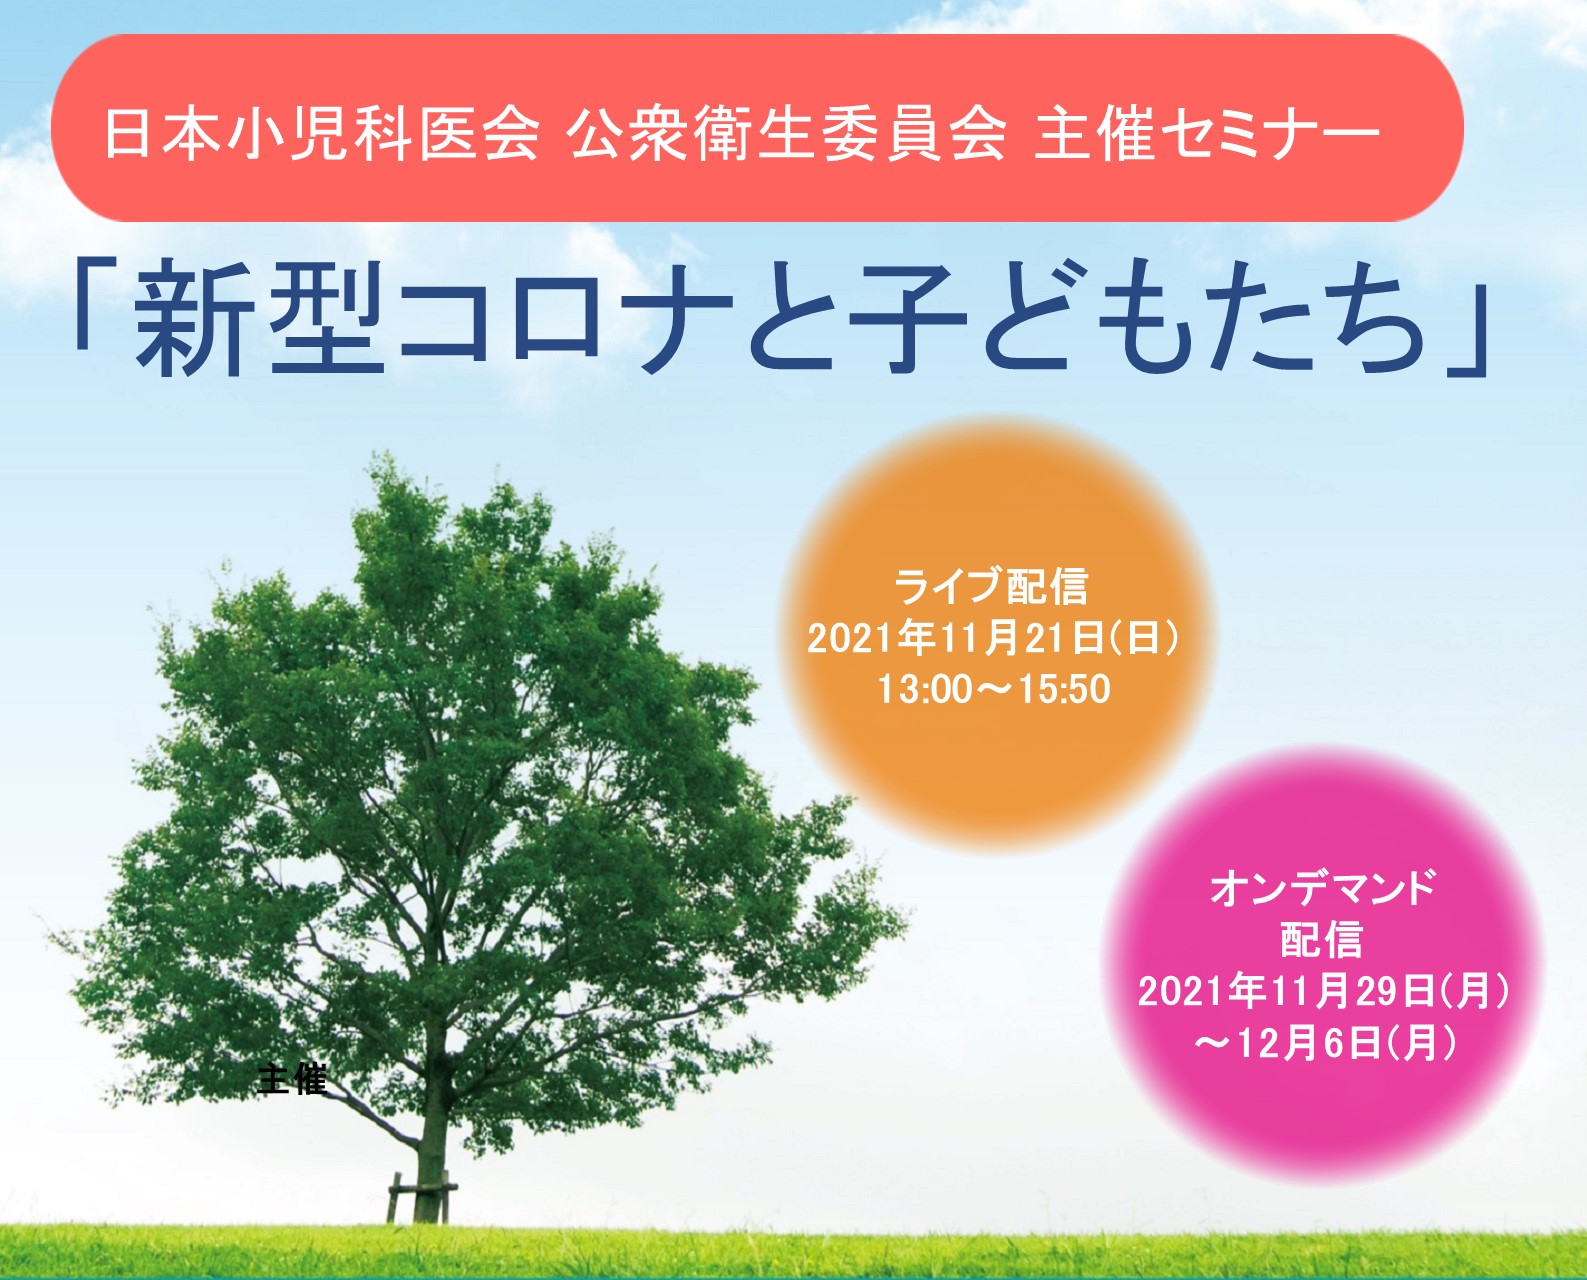 日本小児科医会 公衆衛生委員会主催セミナー「新型コロナと子どもたち」＜WEB開催＞のご案内